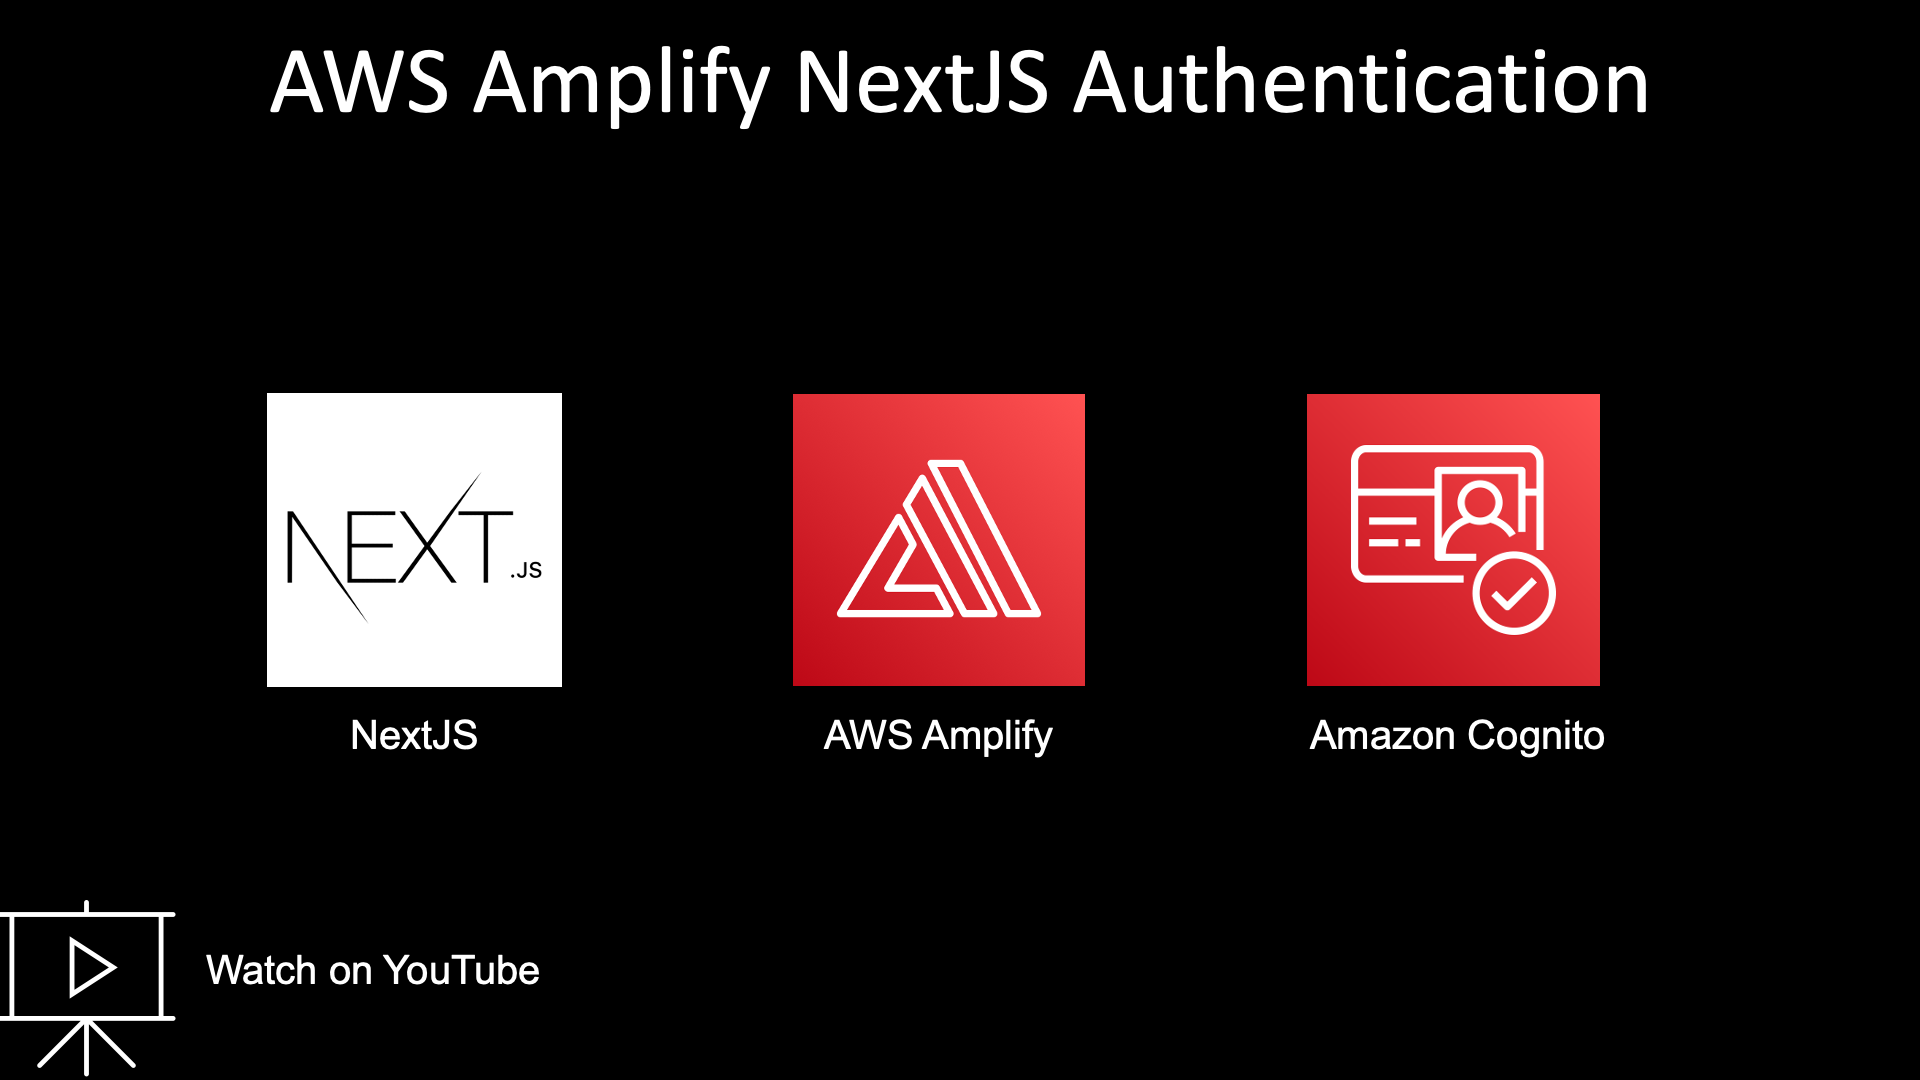 Amplify NextJS Authentication Flow